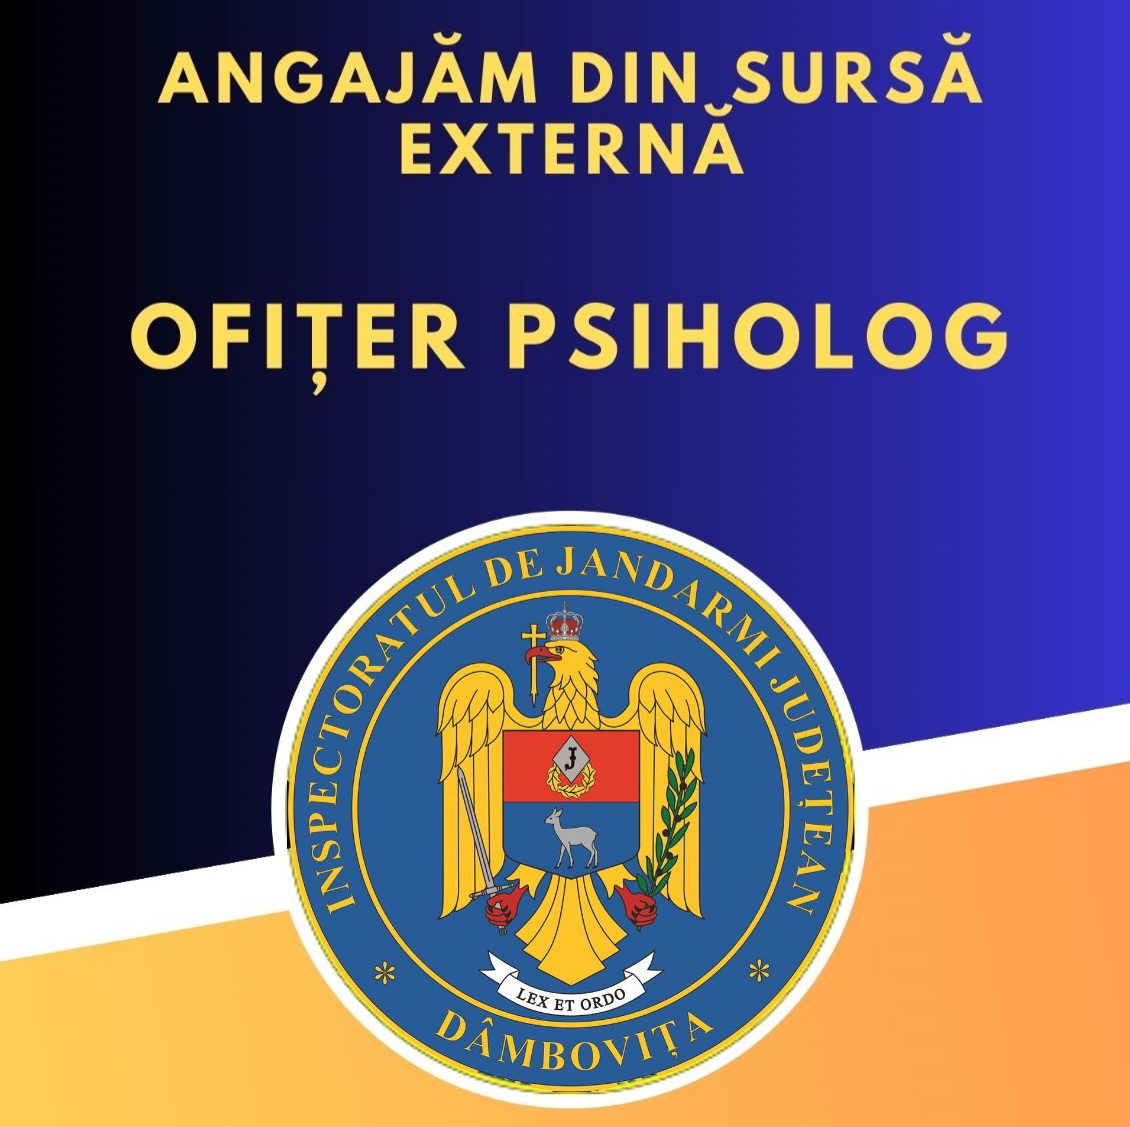 Jandarmeria Dâmbovița angajează ofițer psiholog din sursă externă